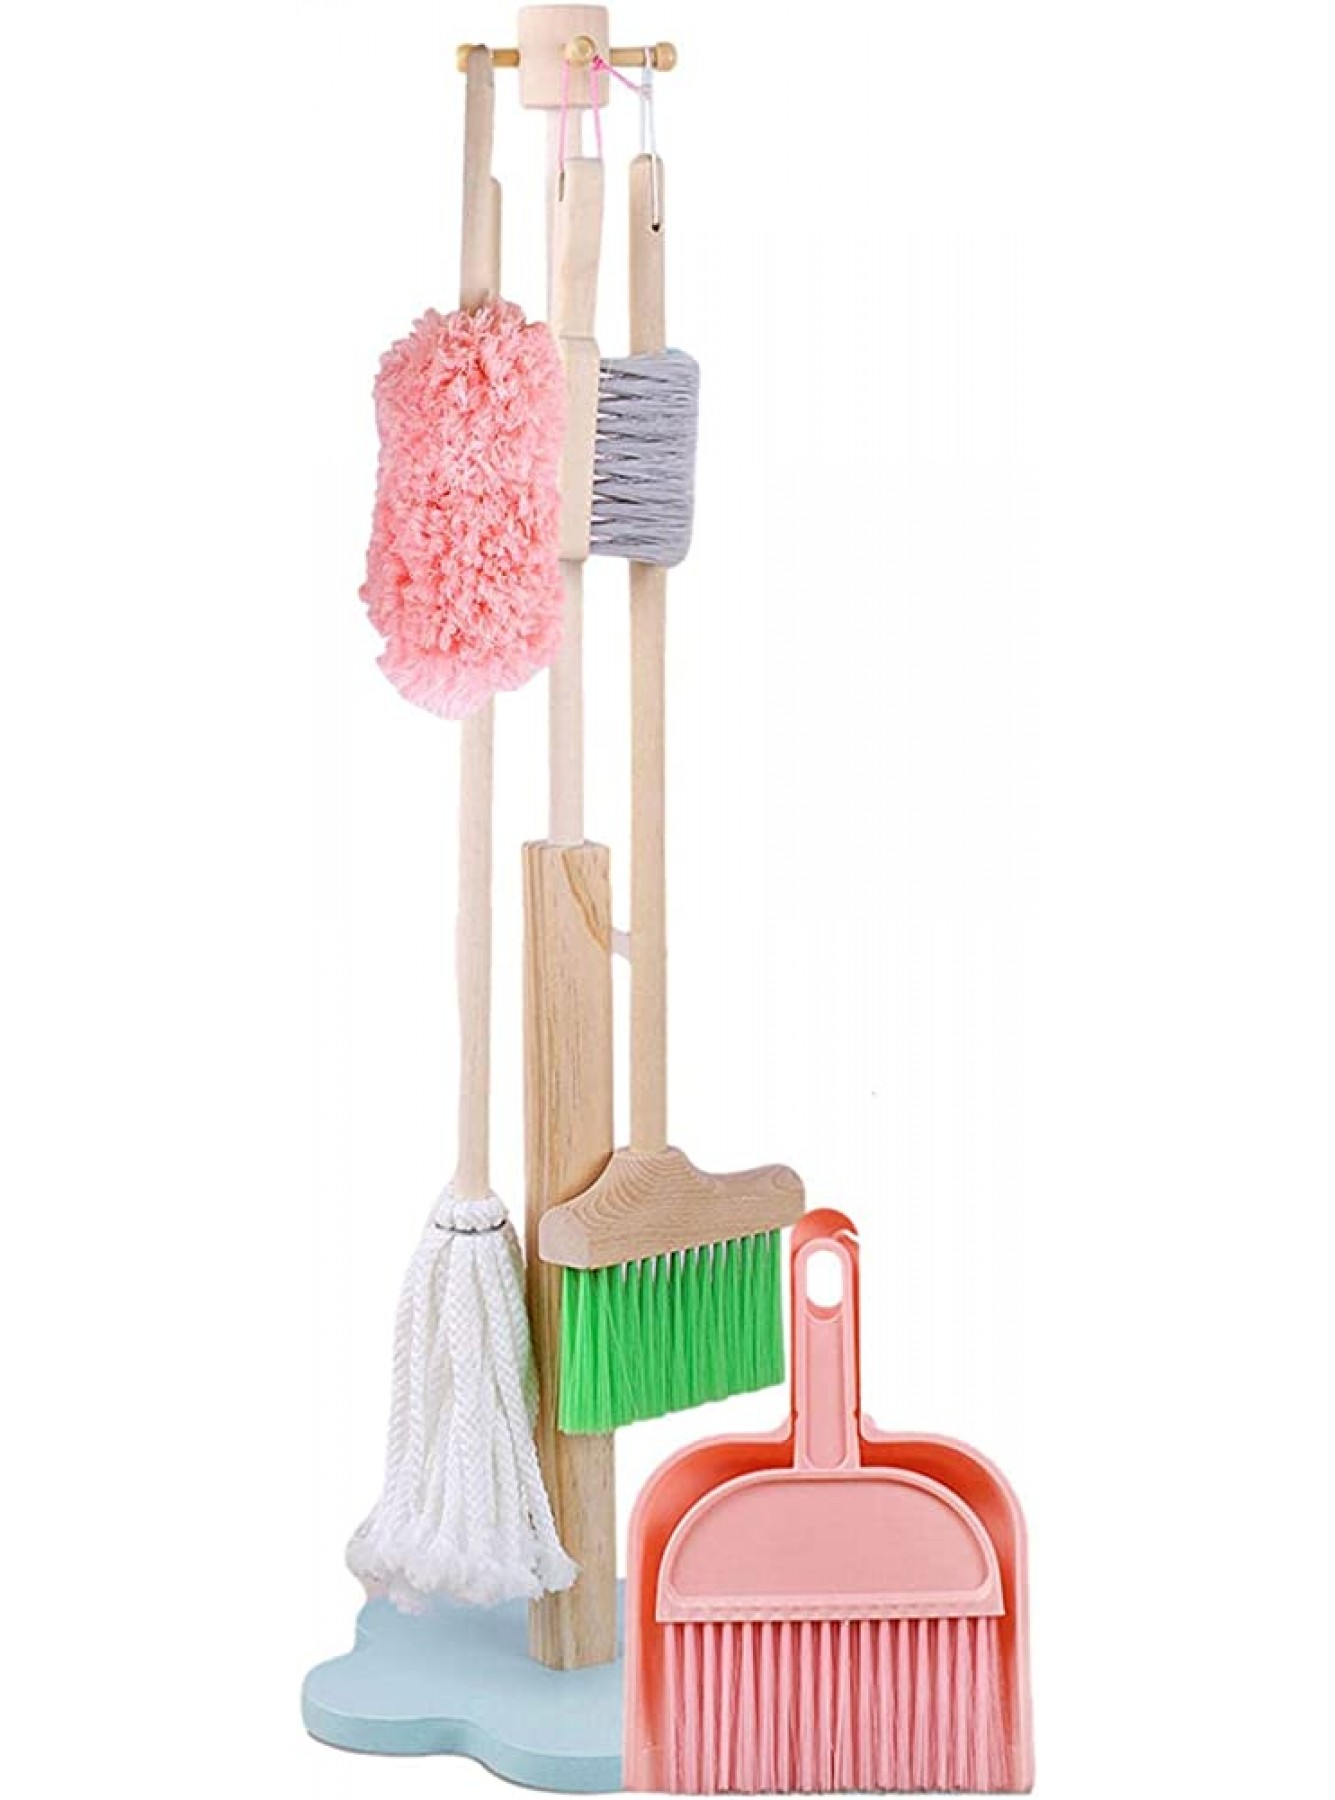 Layiset Reinigungsset für Kinder,Abnehmbares Reinigungswerkzeug inklusive Besen Mopp Abnehmbares Reinigungswerkzeug für Kinder Haushaltsspielzeug Geschenk für Mädchen Jungen ab 2 Jahren - B0B6P5QJPR